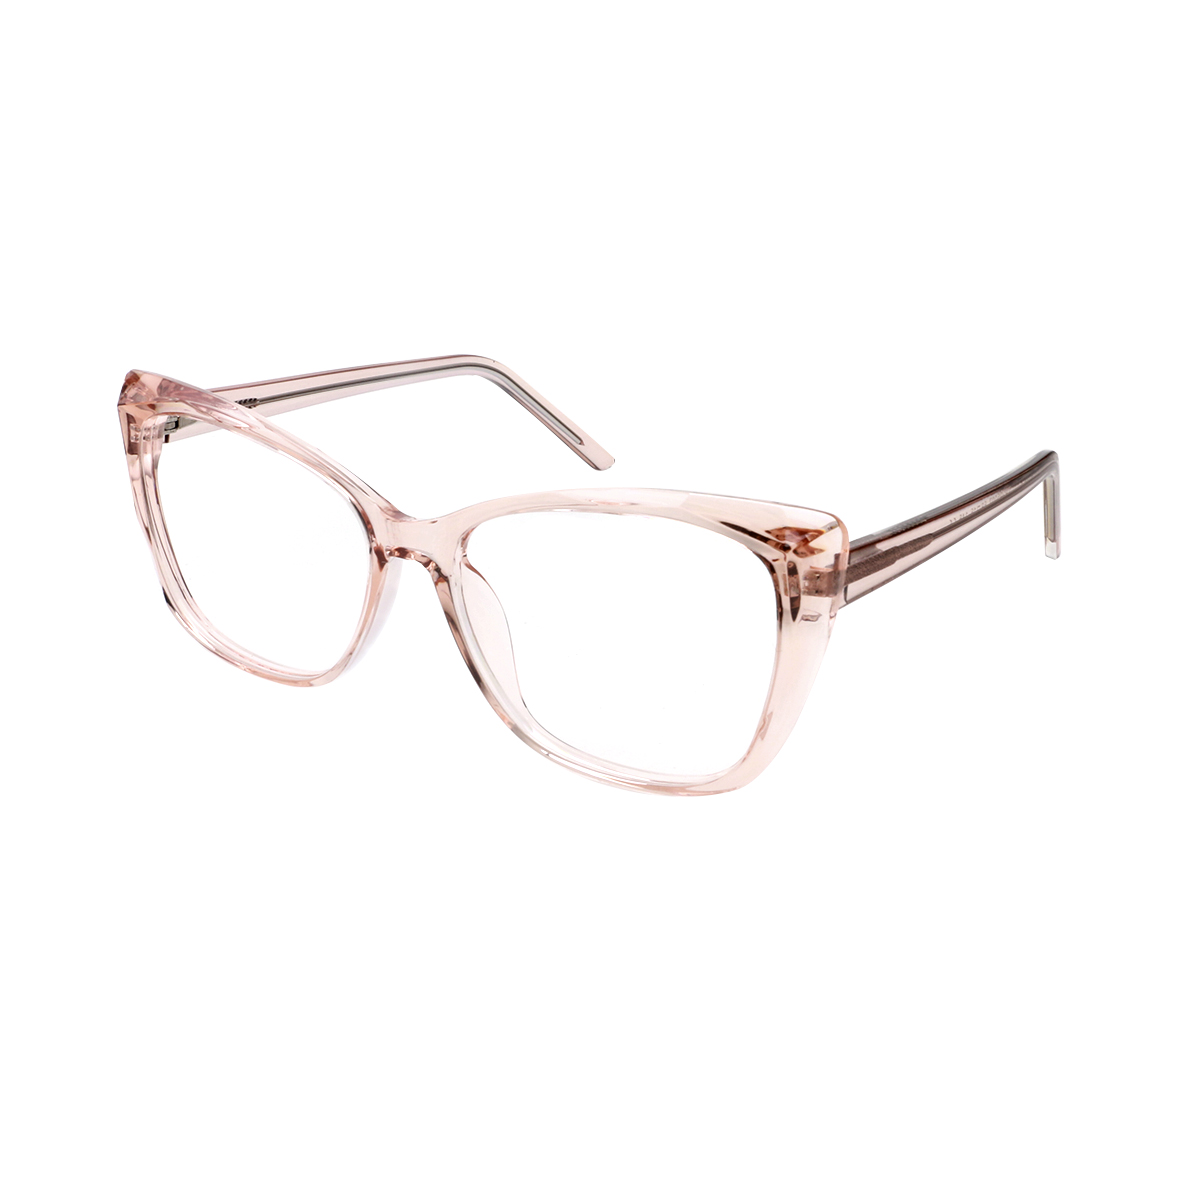 Elena - Cat-eye Pink Reading Glasses for Women